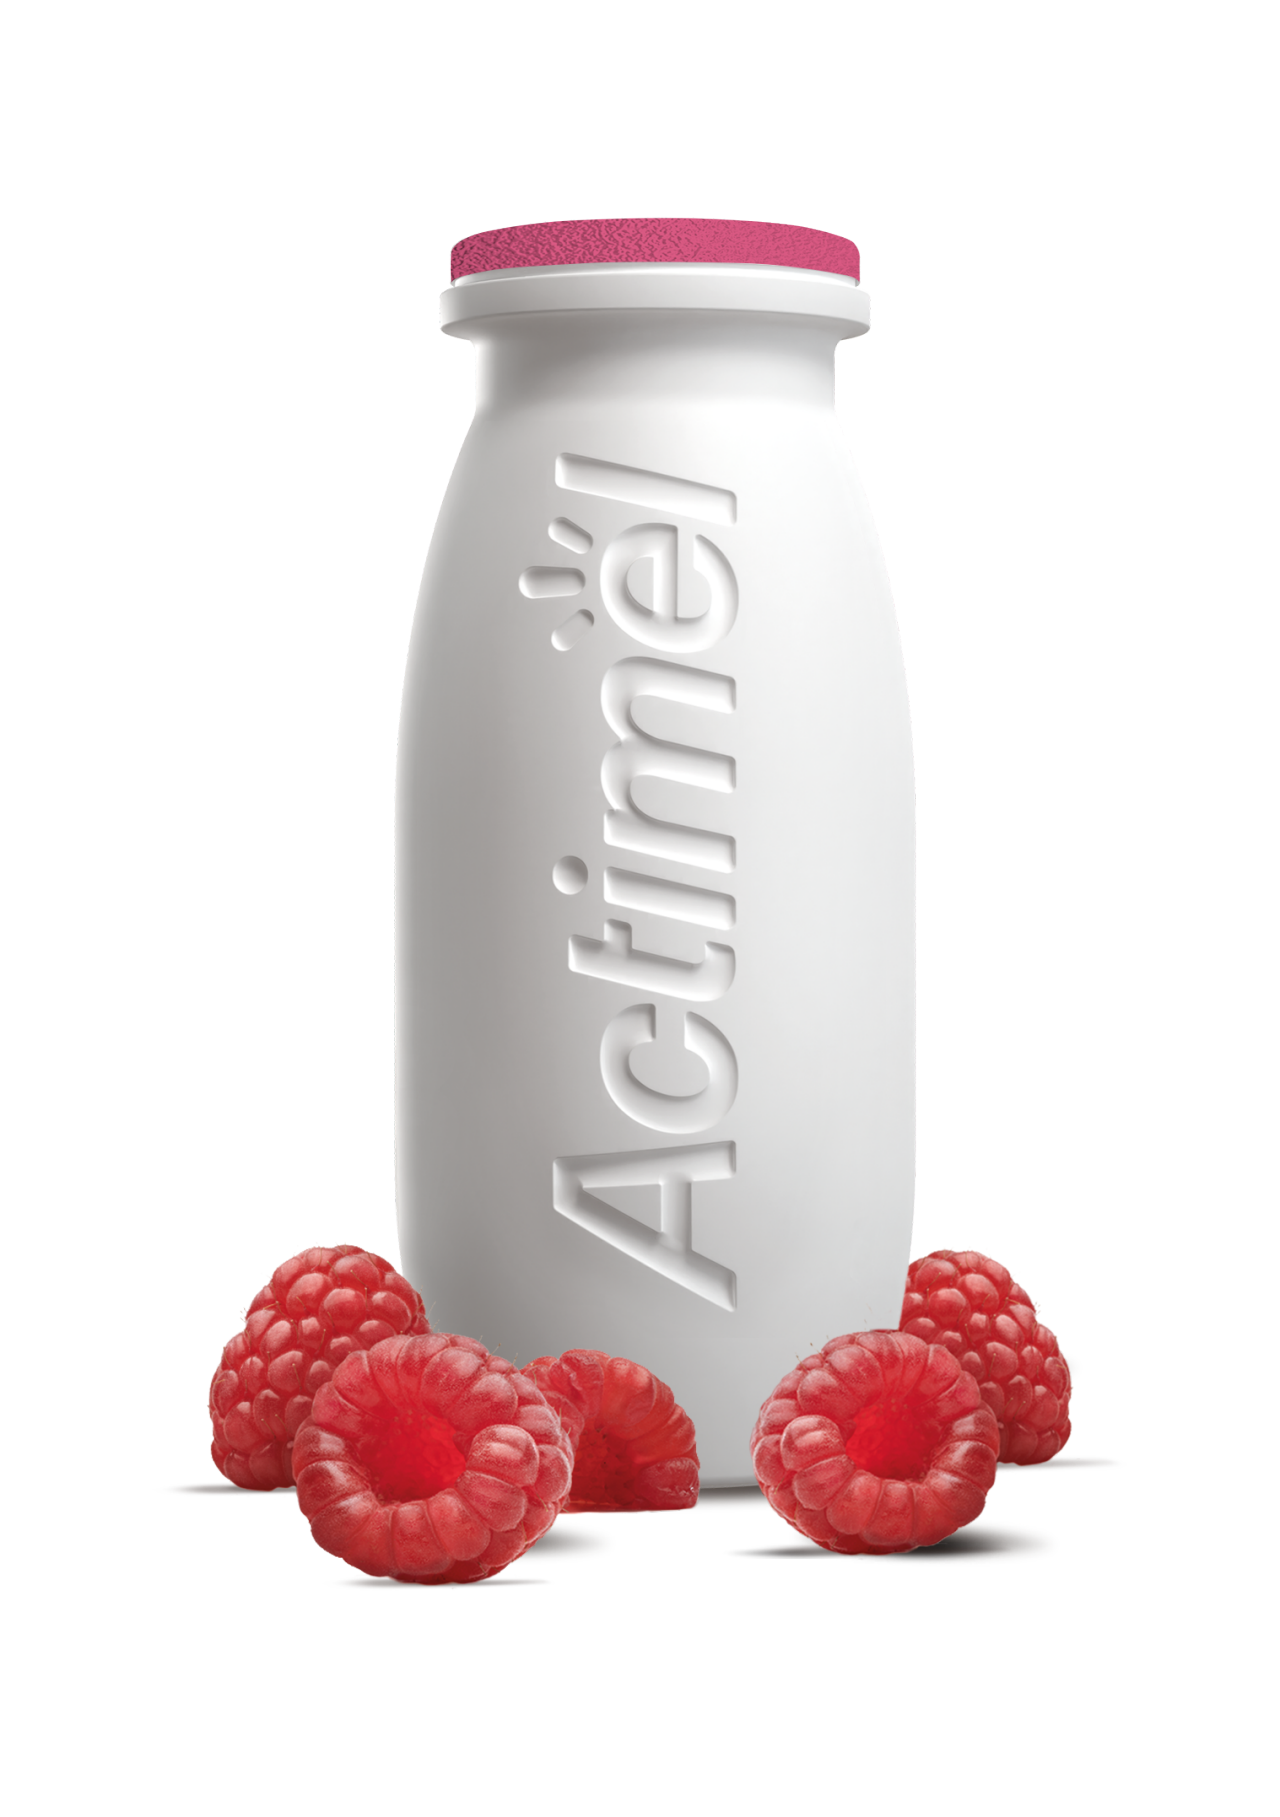 raspberry-0-fat-0-added-sugar